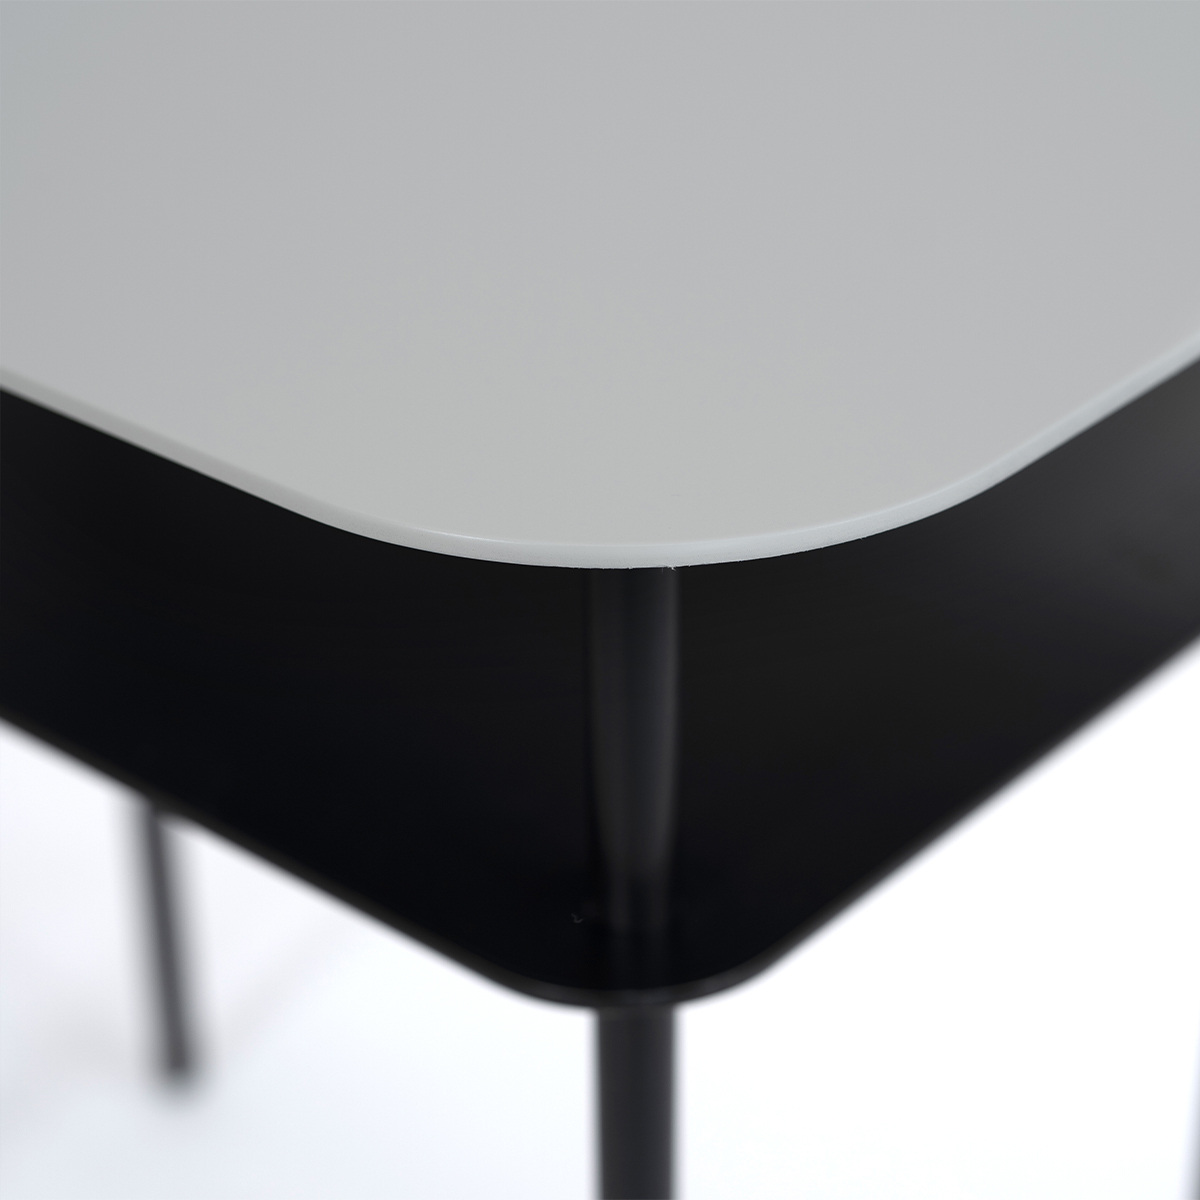 Table d'appoint Kara, Radis noir - L60 x l40 x H55 cm  - Acier brut Thermolaqué - image 14